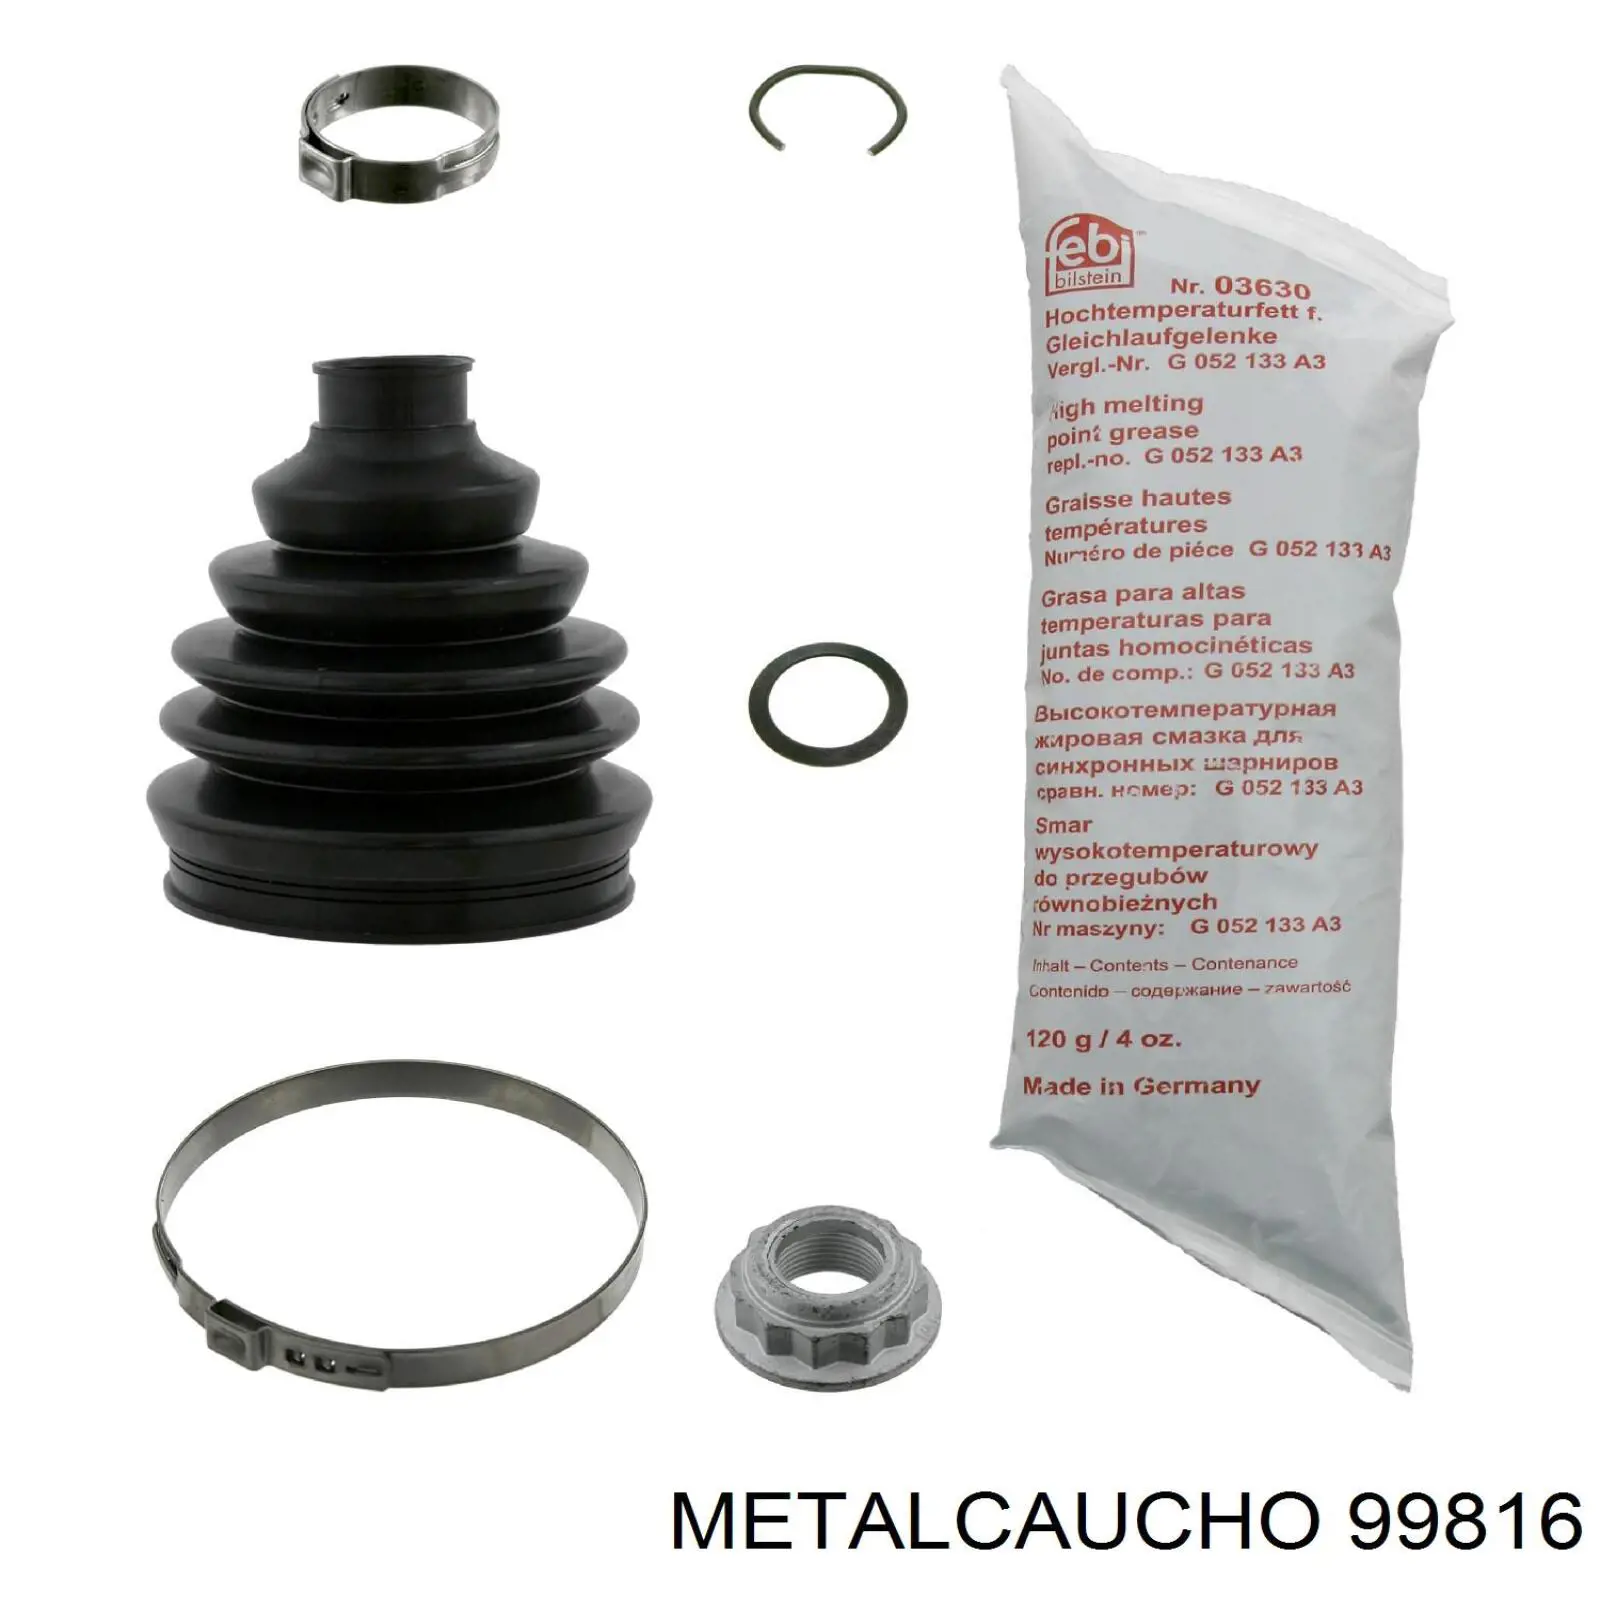 512 0909 Autotechteile tubo (manguera Para Drenar El Aceite De Una Turbina)